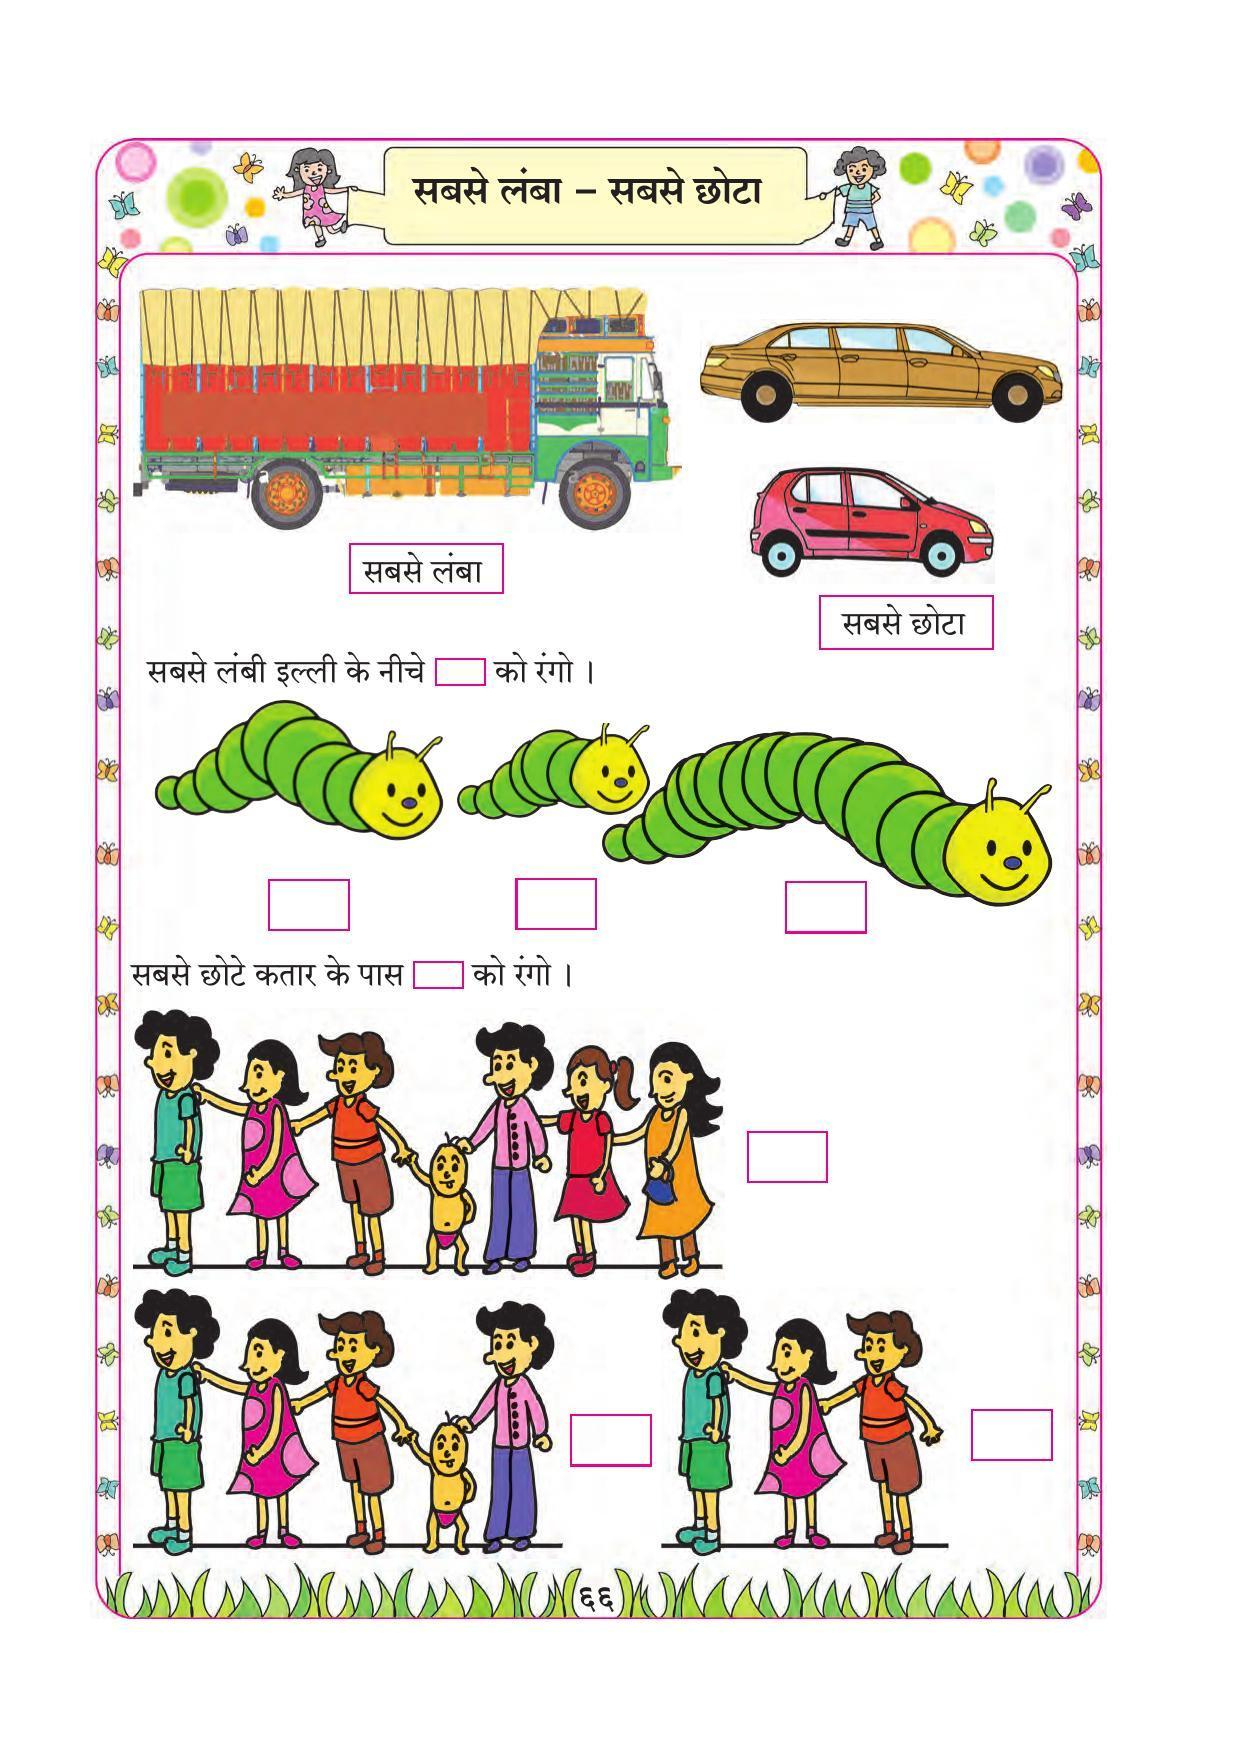 Maharashtra Board Class 1 Maths (Hindi Medium) Textbook - Page 76